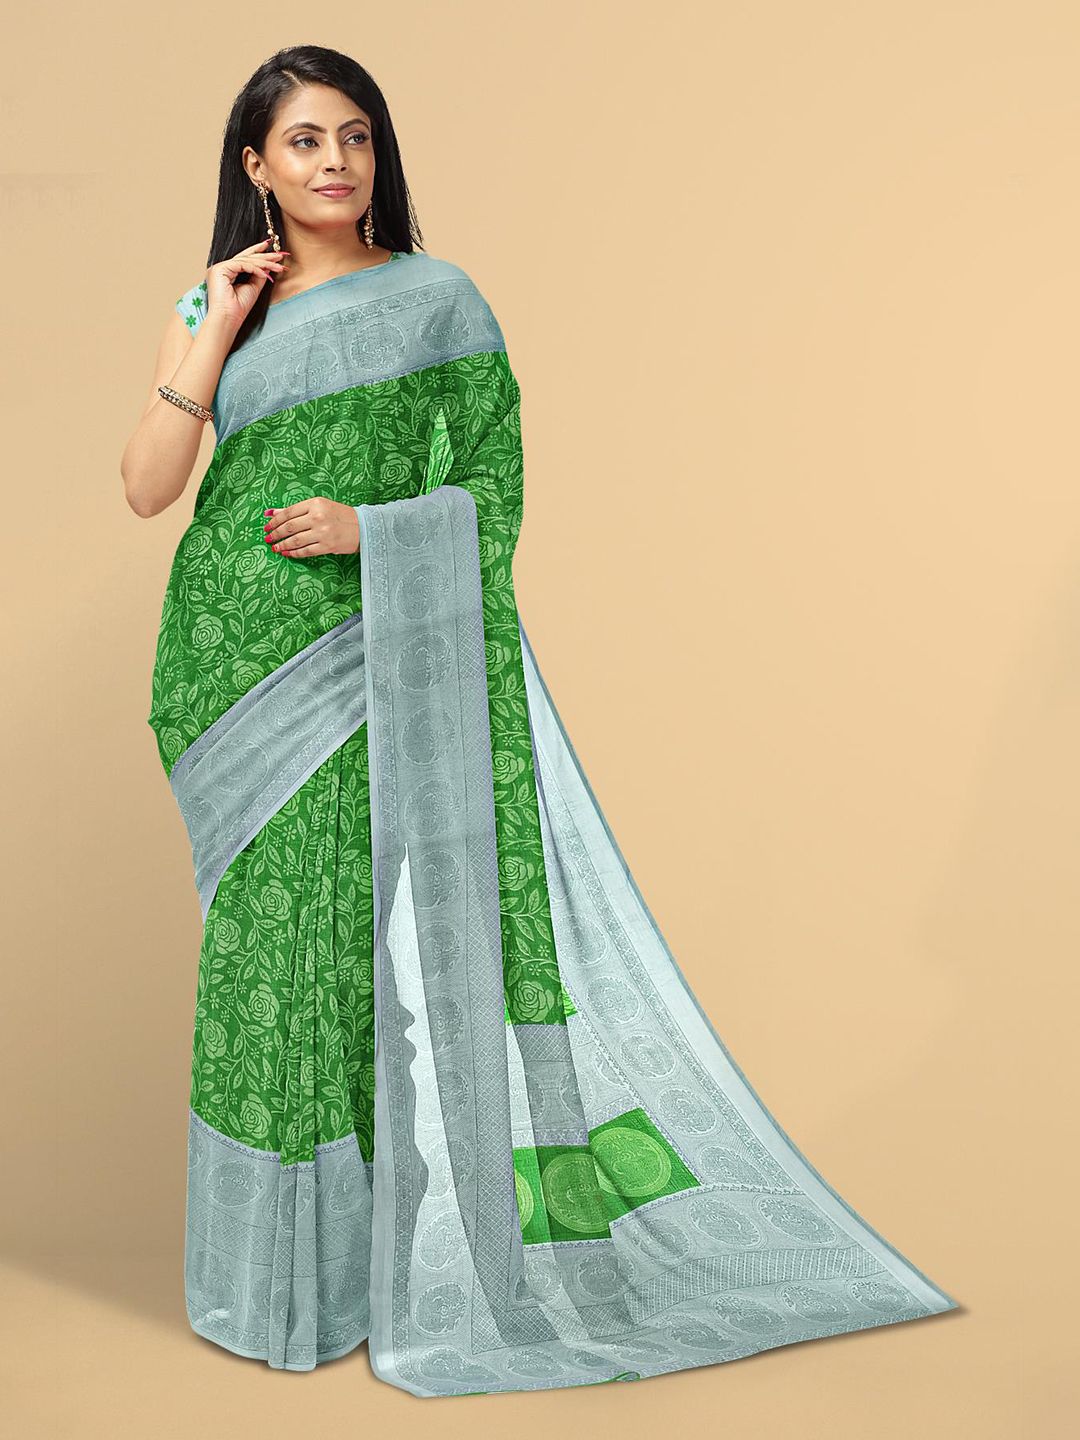 Kalamandir Green & Grey Floral Saree Price in India